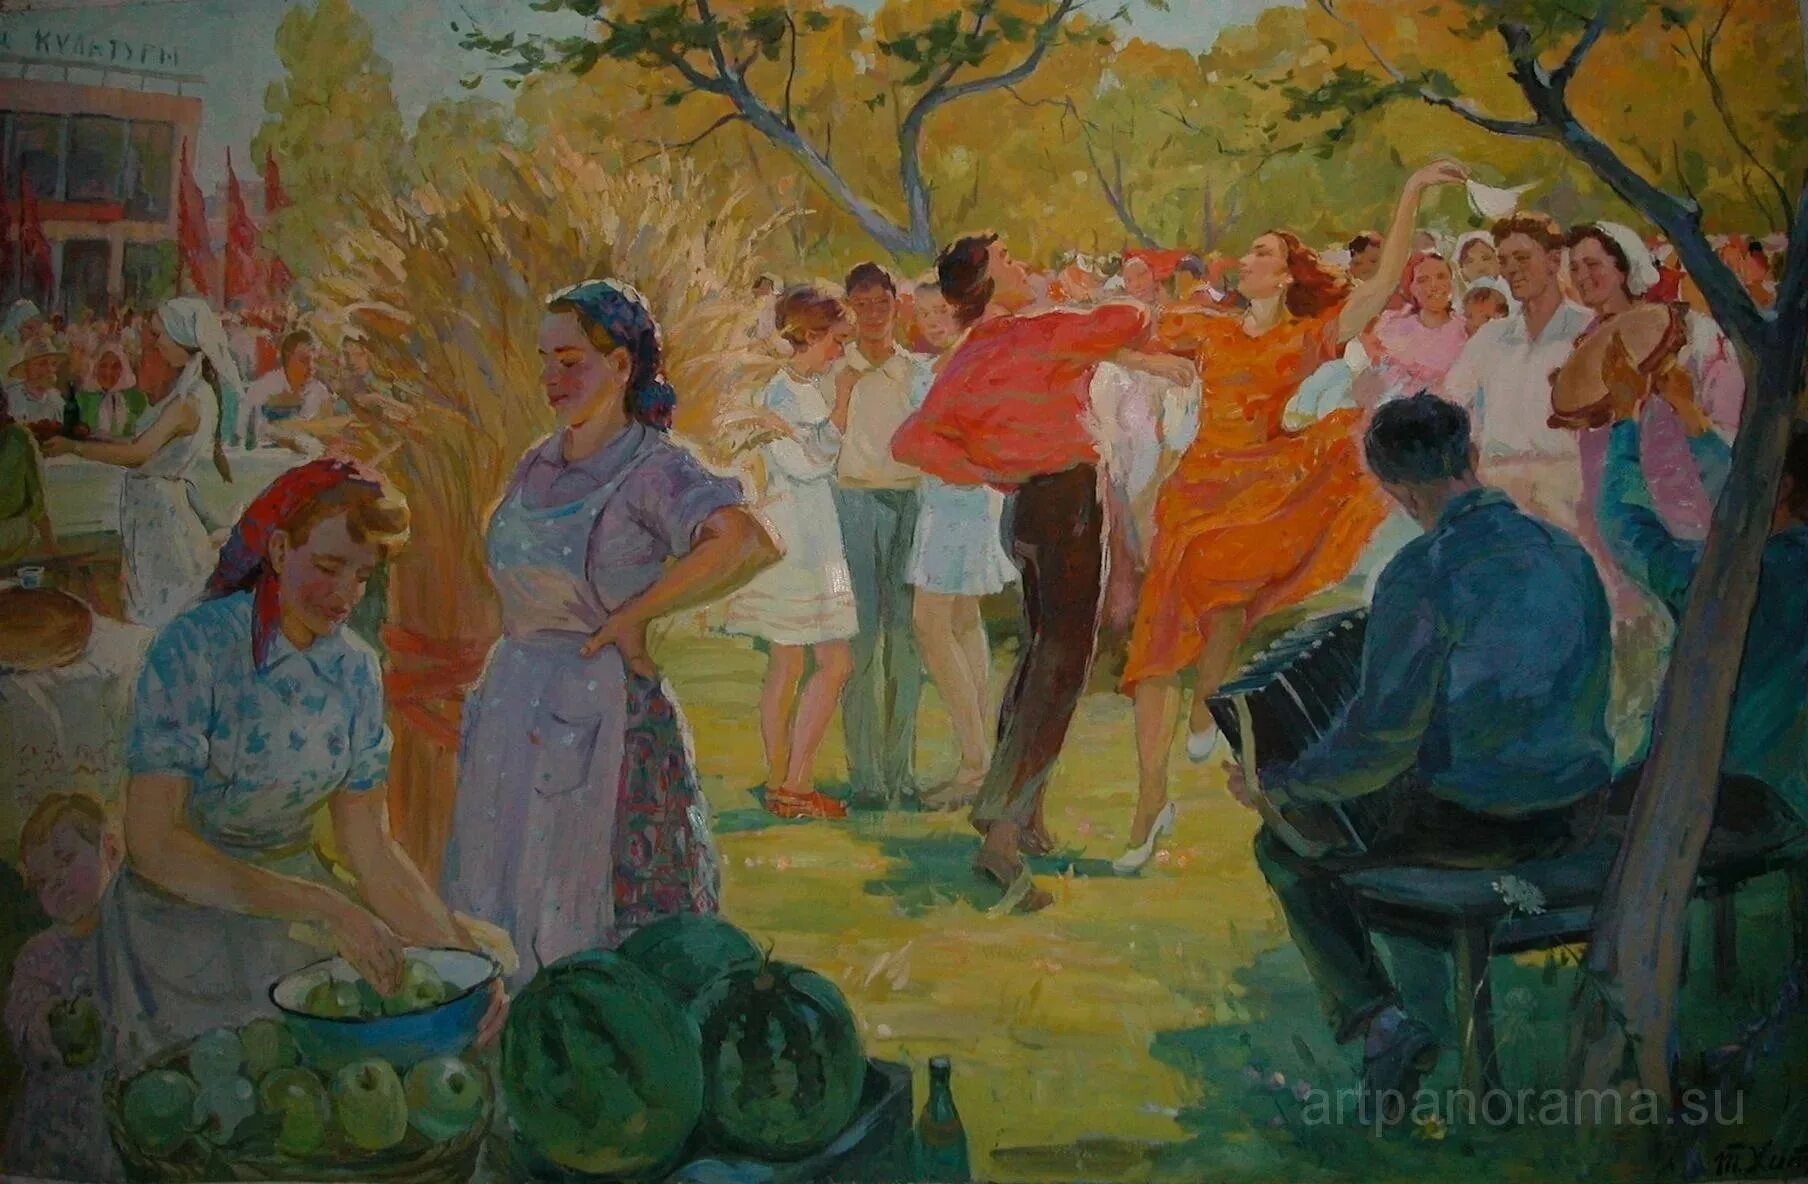 Коровин Деревенские танцы 1936. Станковая композиция живопись.